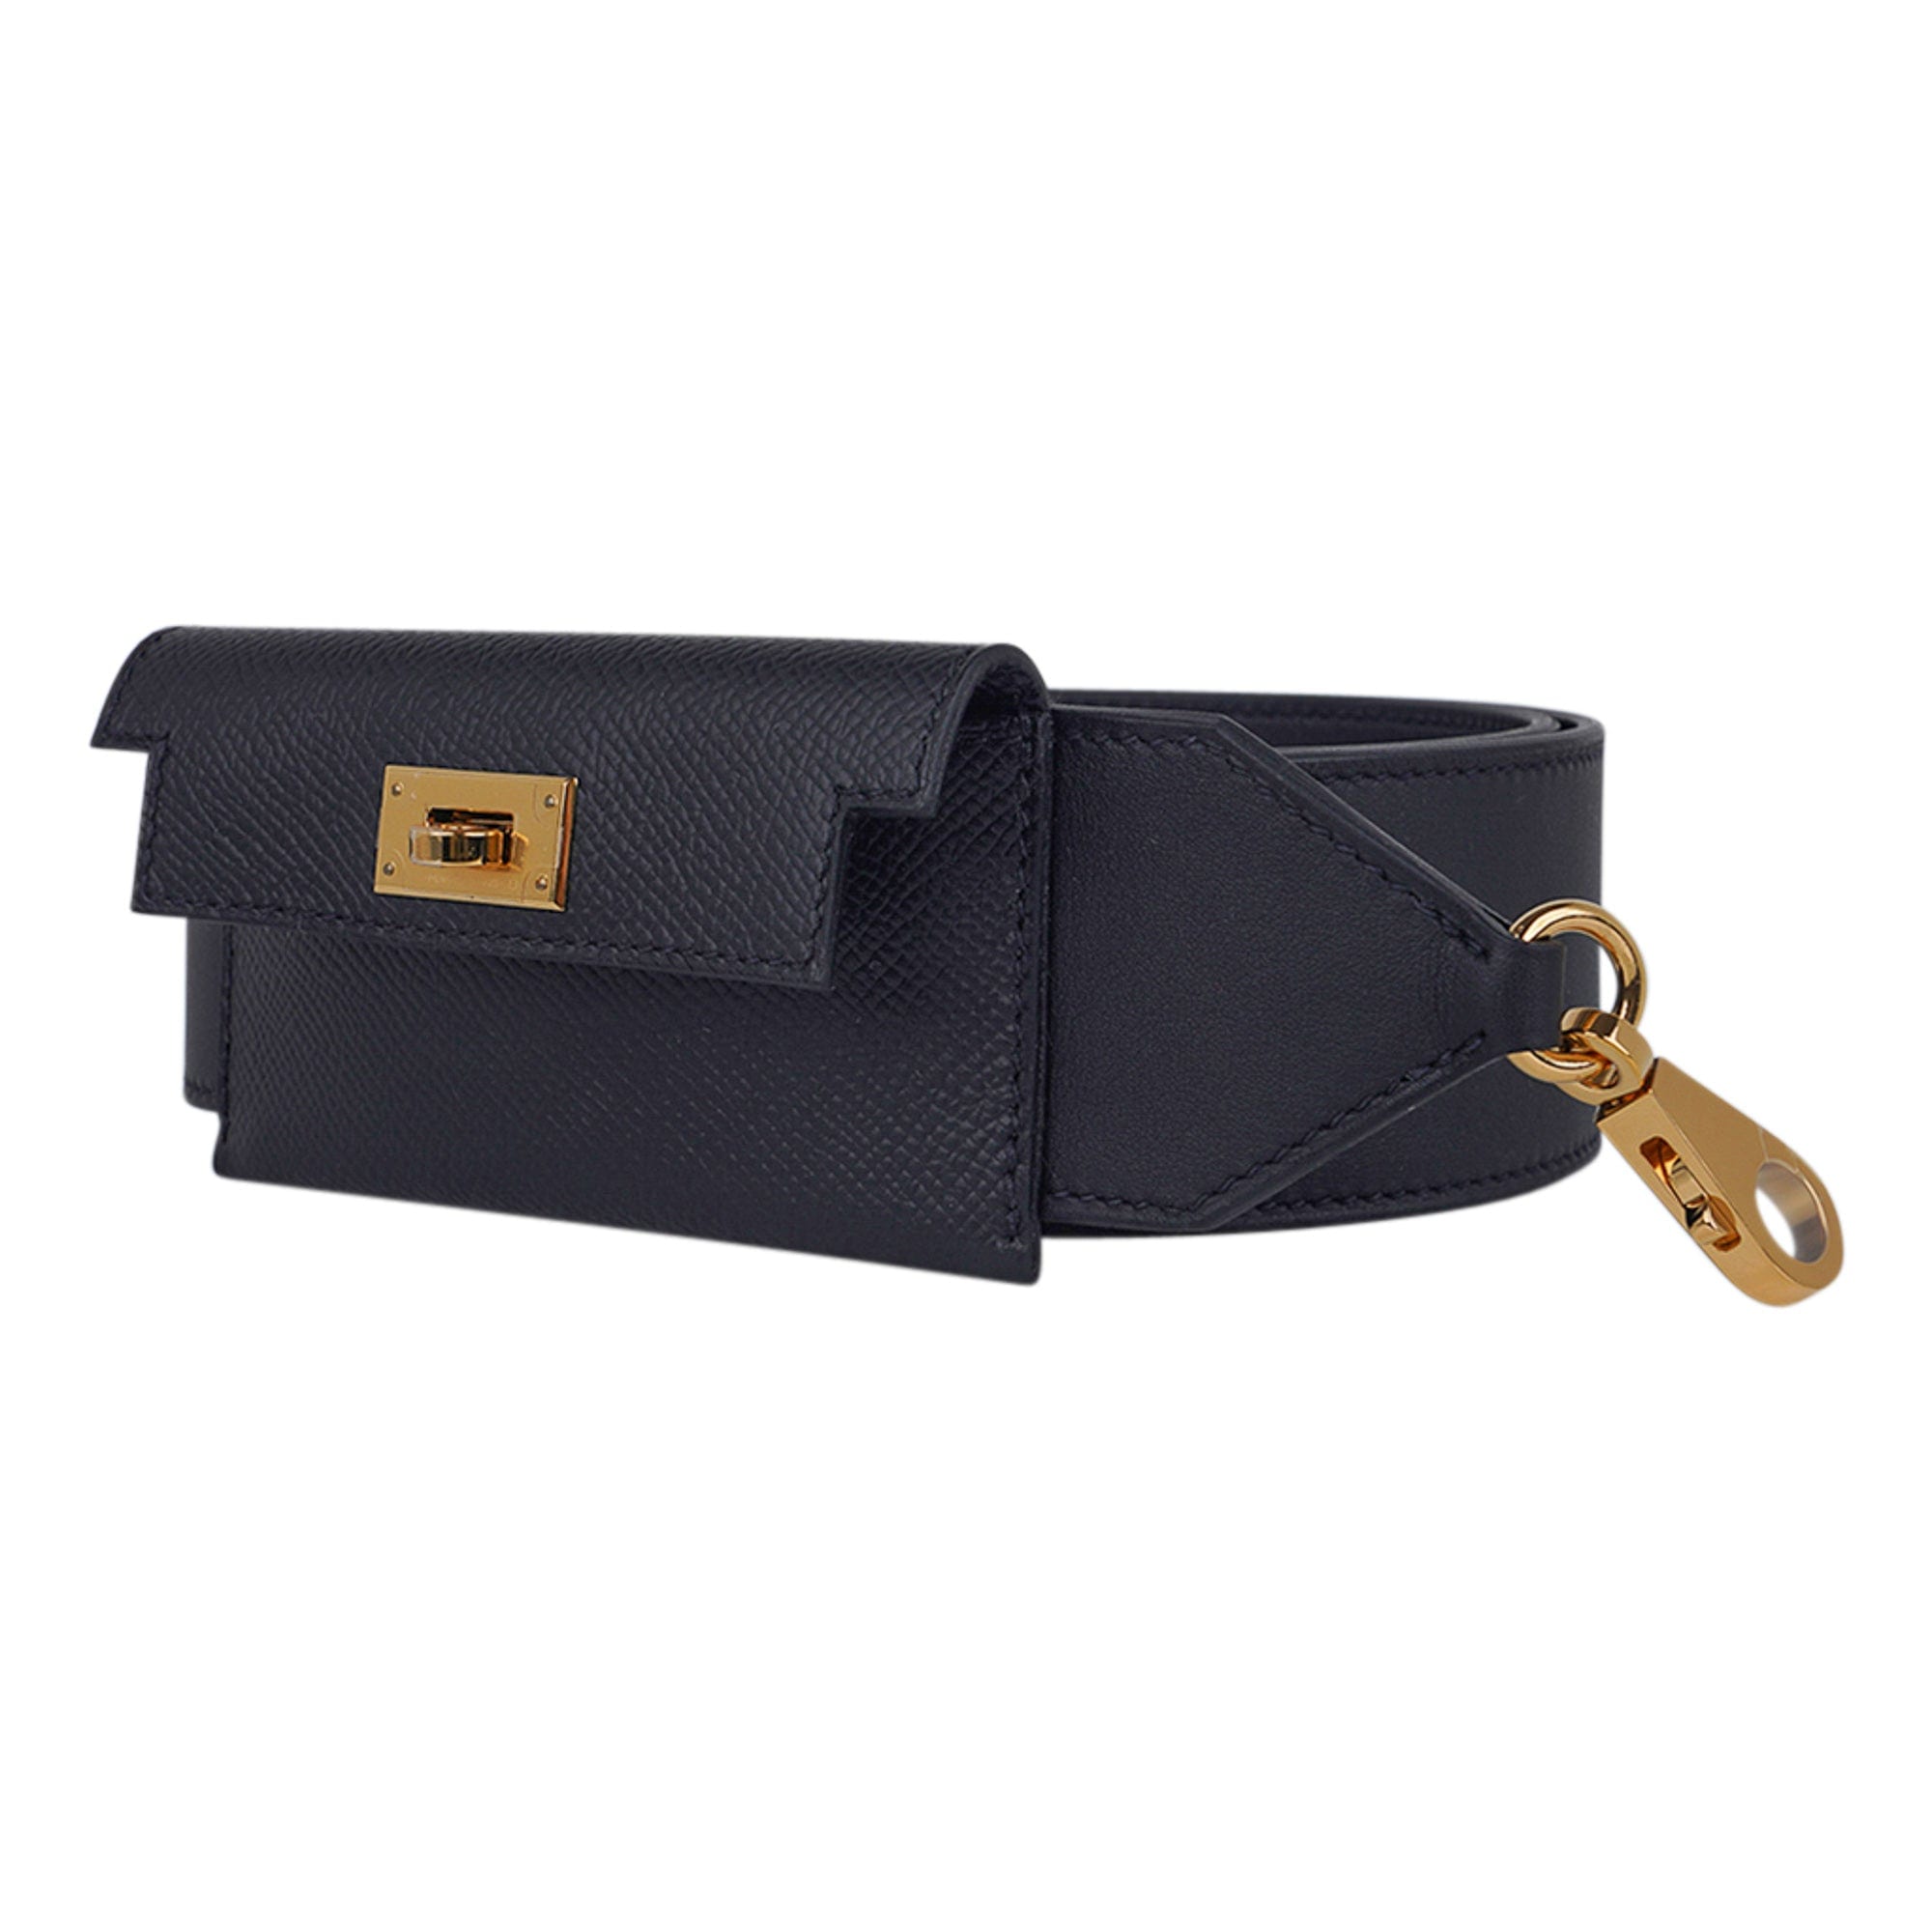 Hermes Kelly Pocket Bag Strap Nata/Sesame Epsom/Swift, Gold